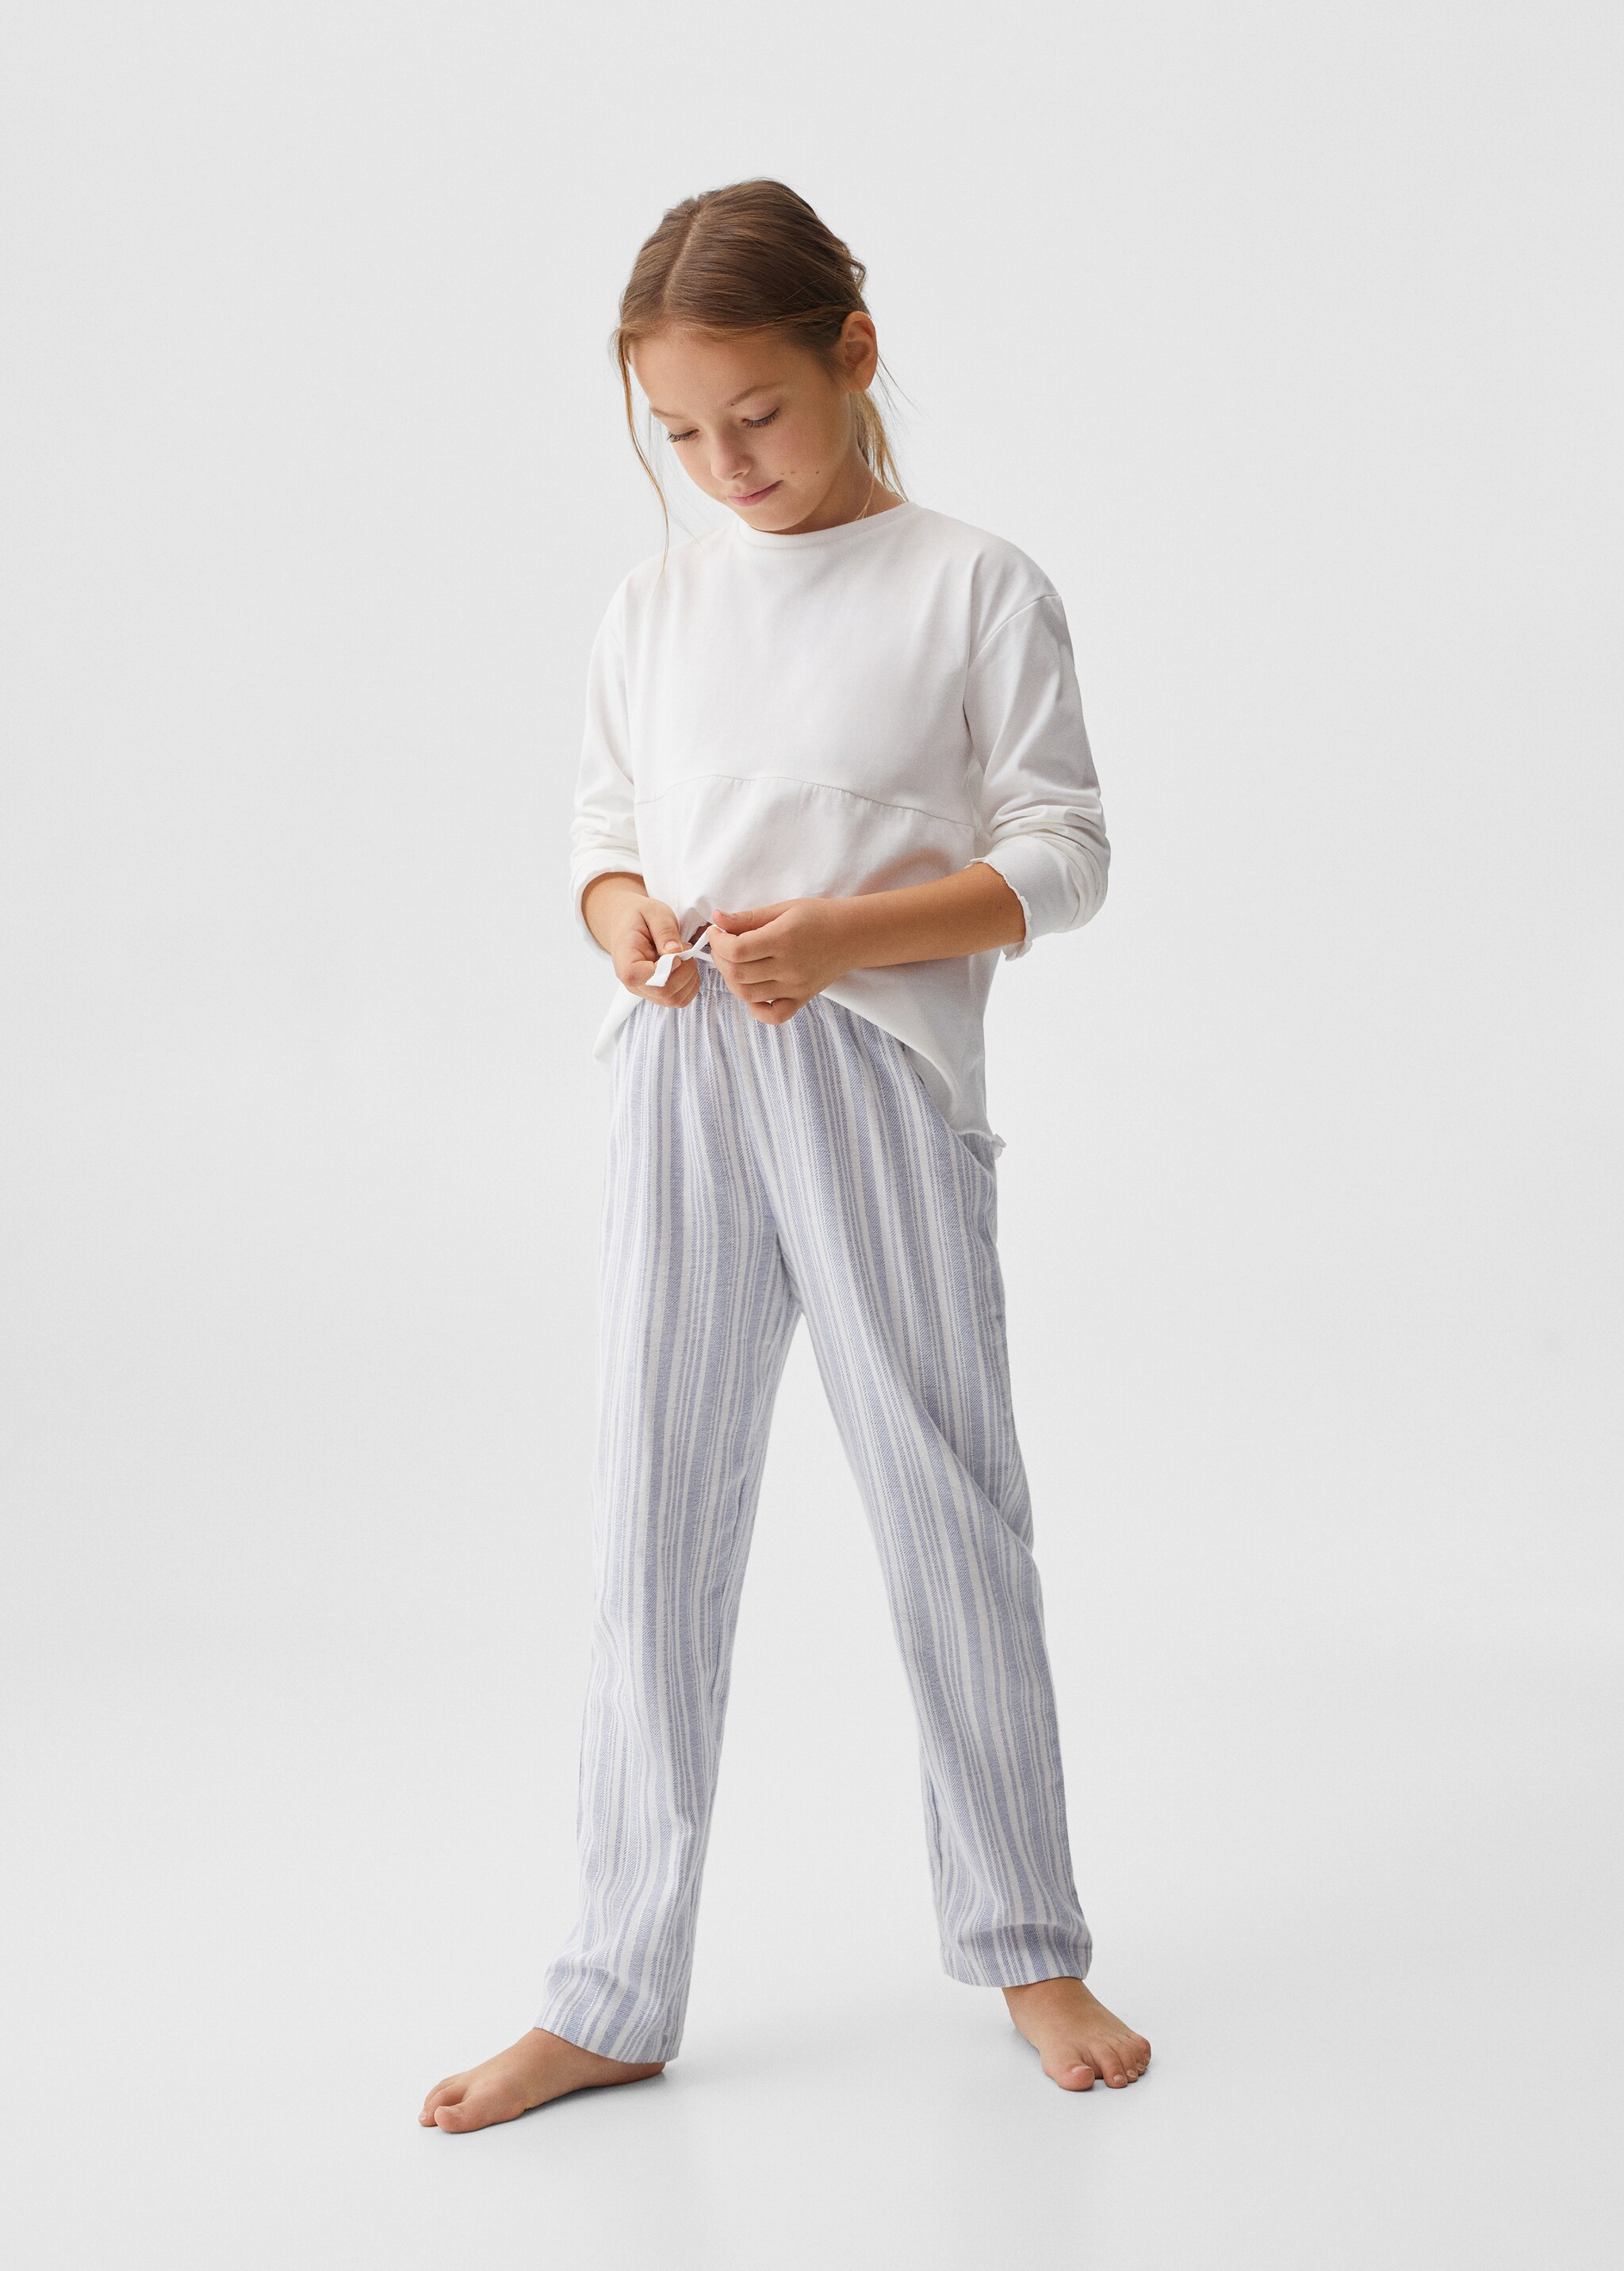 Striped cotton long pyjama - General plane